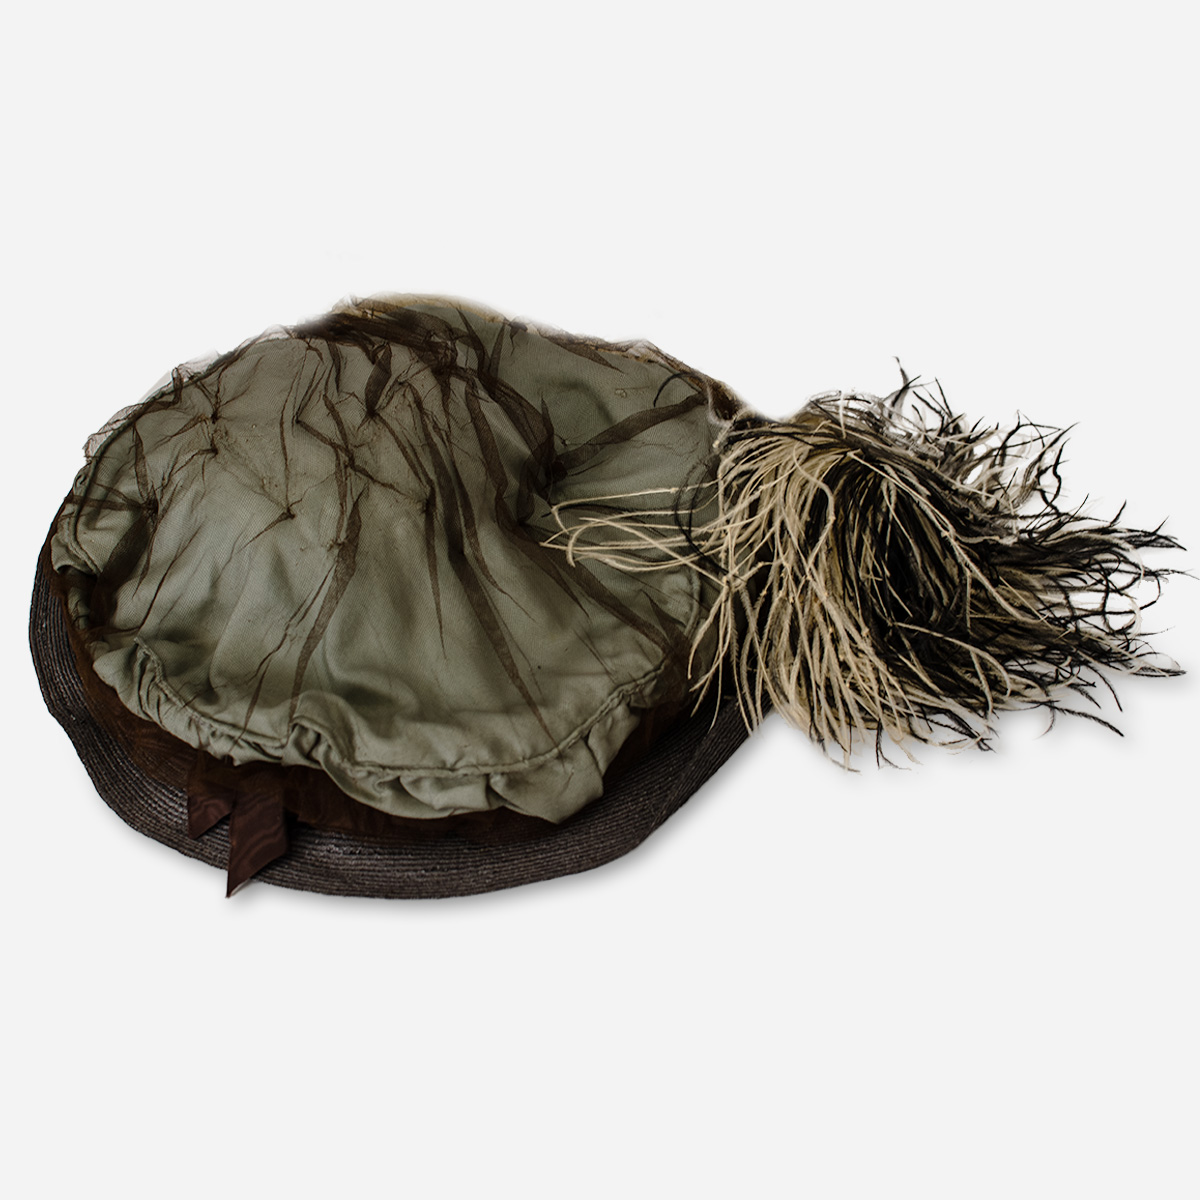 antique merry widow hat